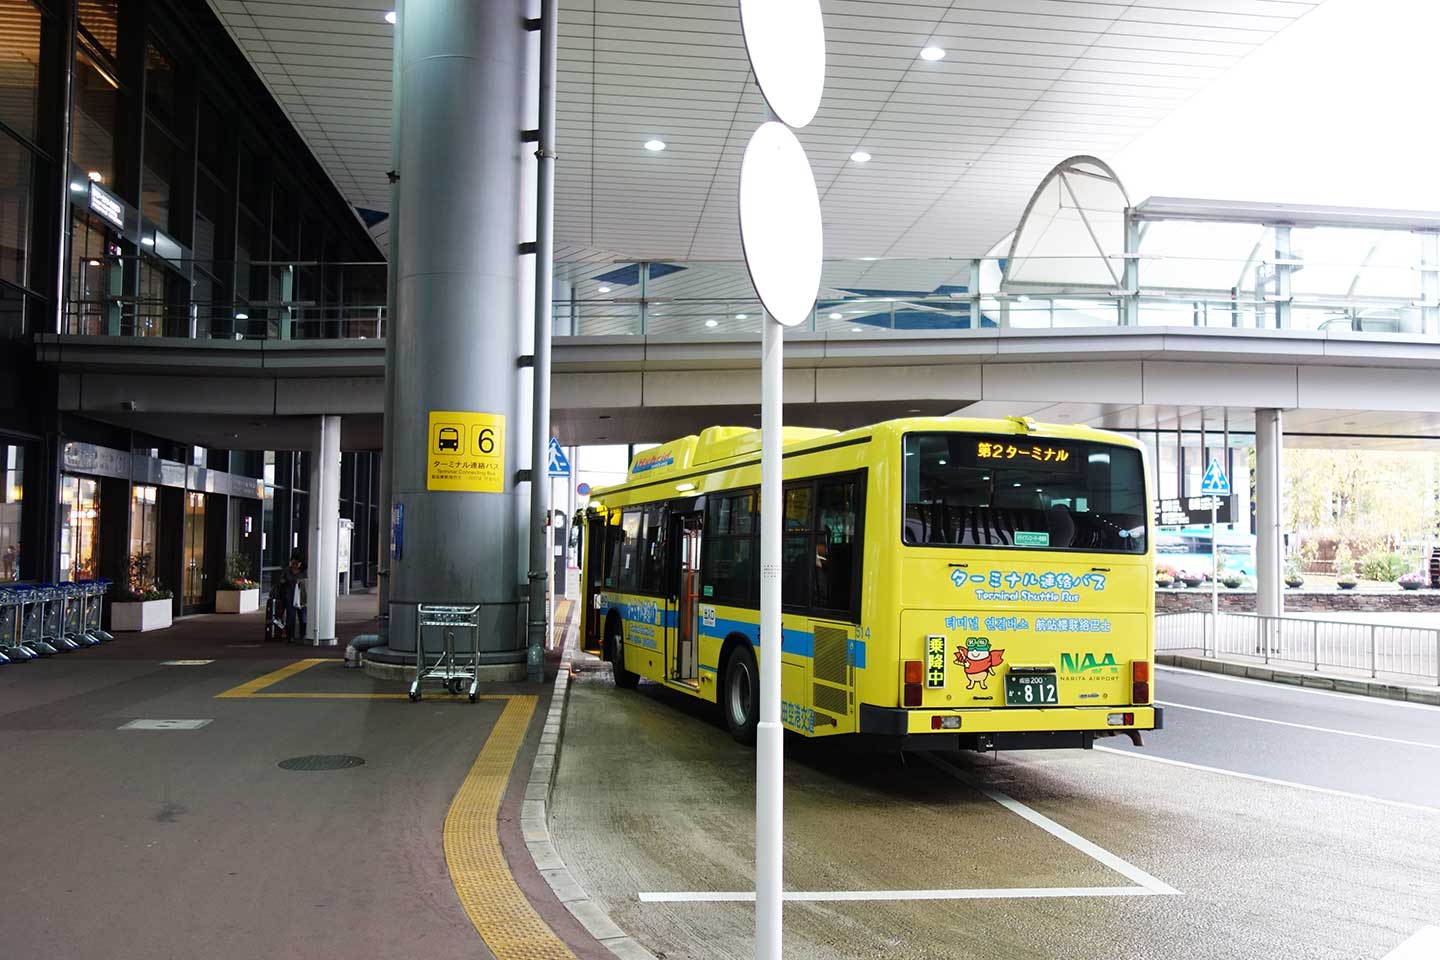 成田空港 ターミナル間の移動は連絡バス 無料 が便利 第1ターミナルから第2ターミナルへ連絡バスで移動してみた 成田リポート